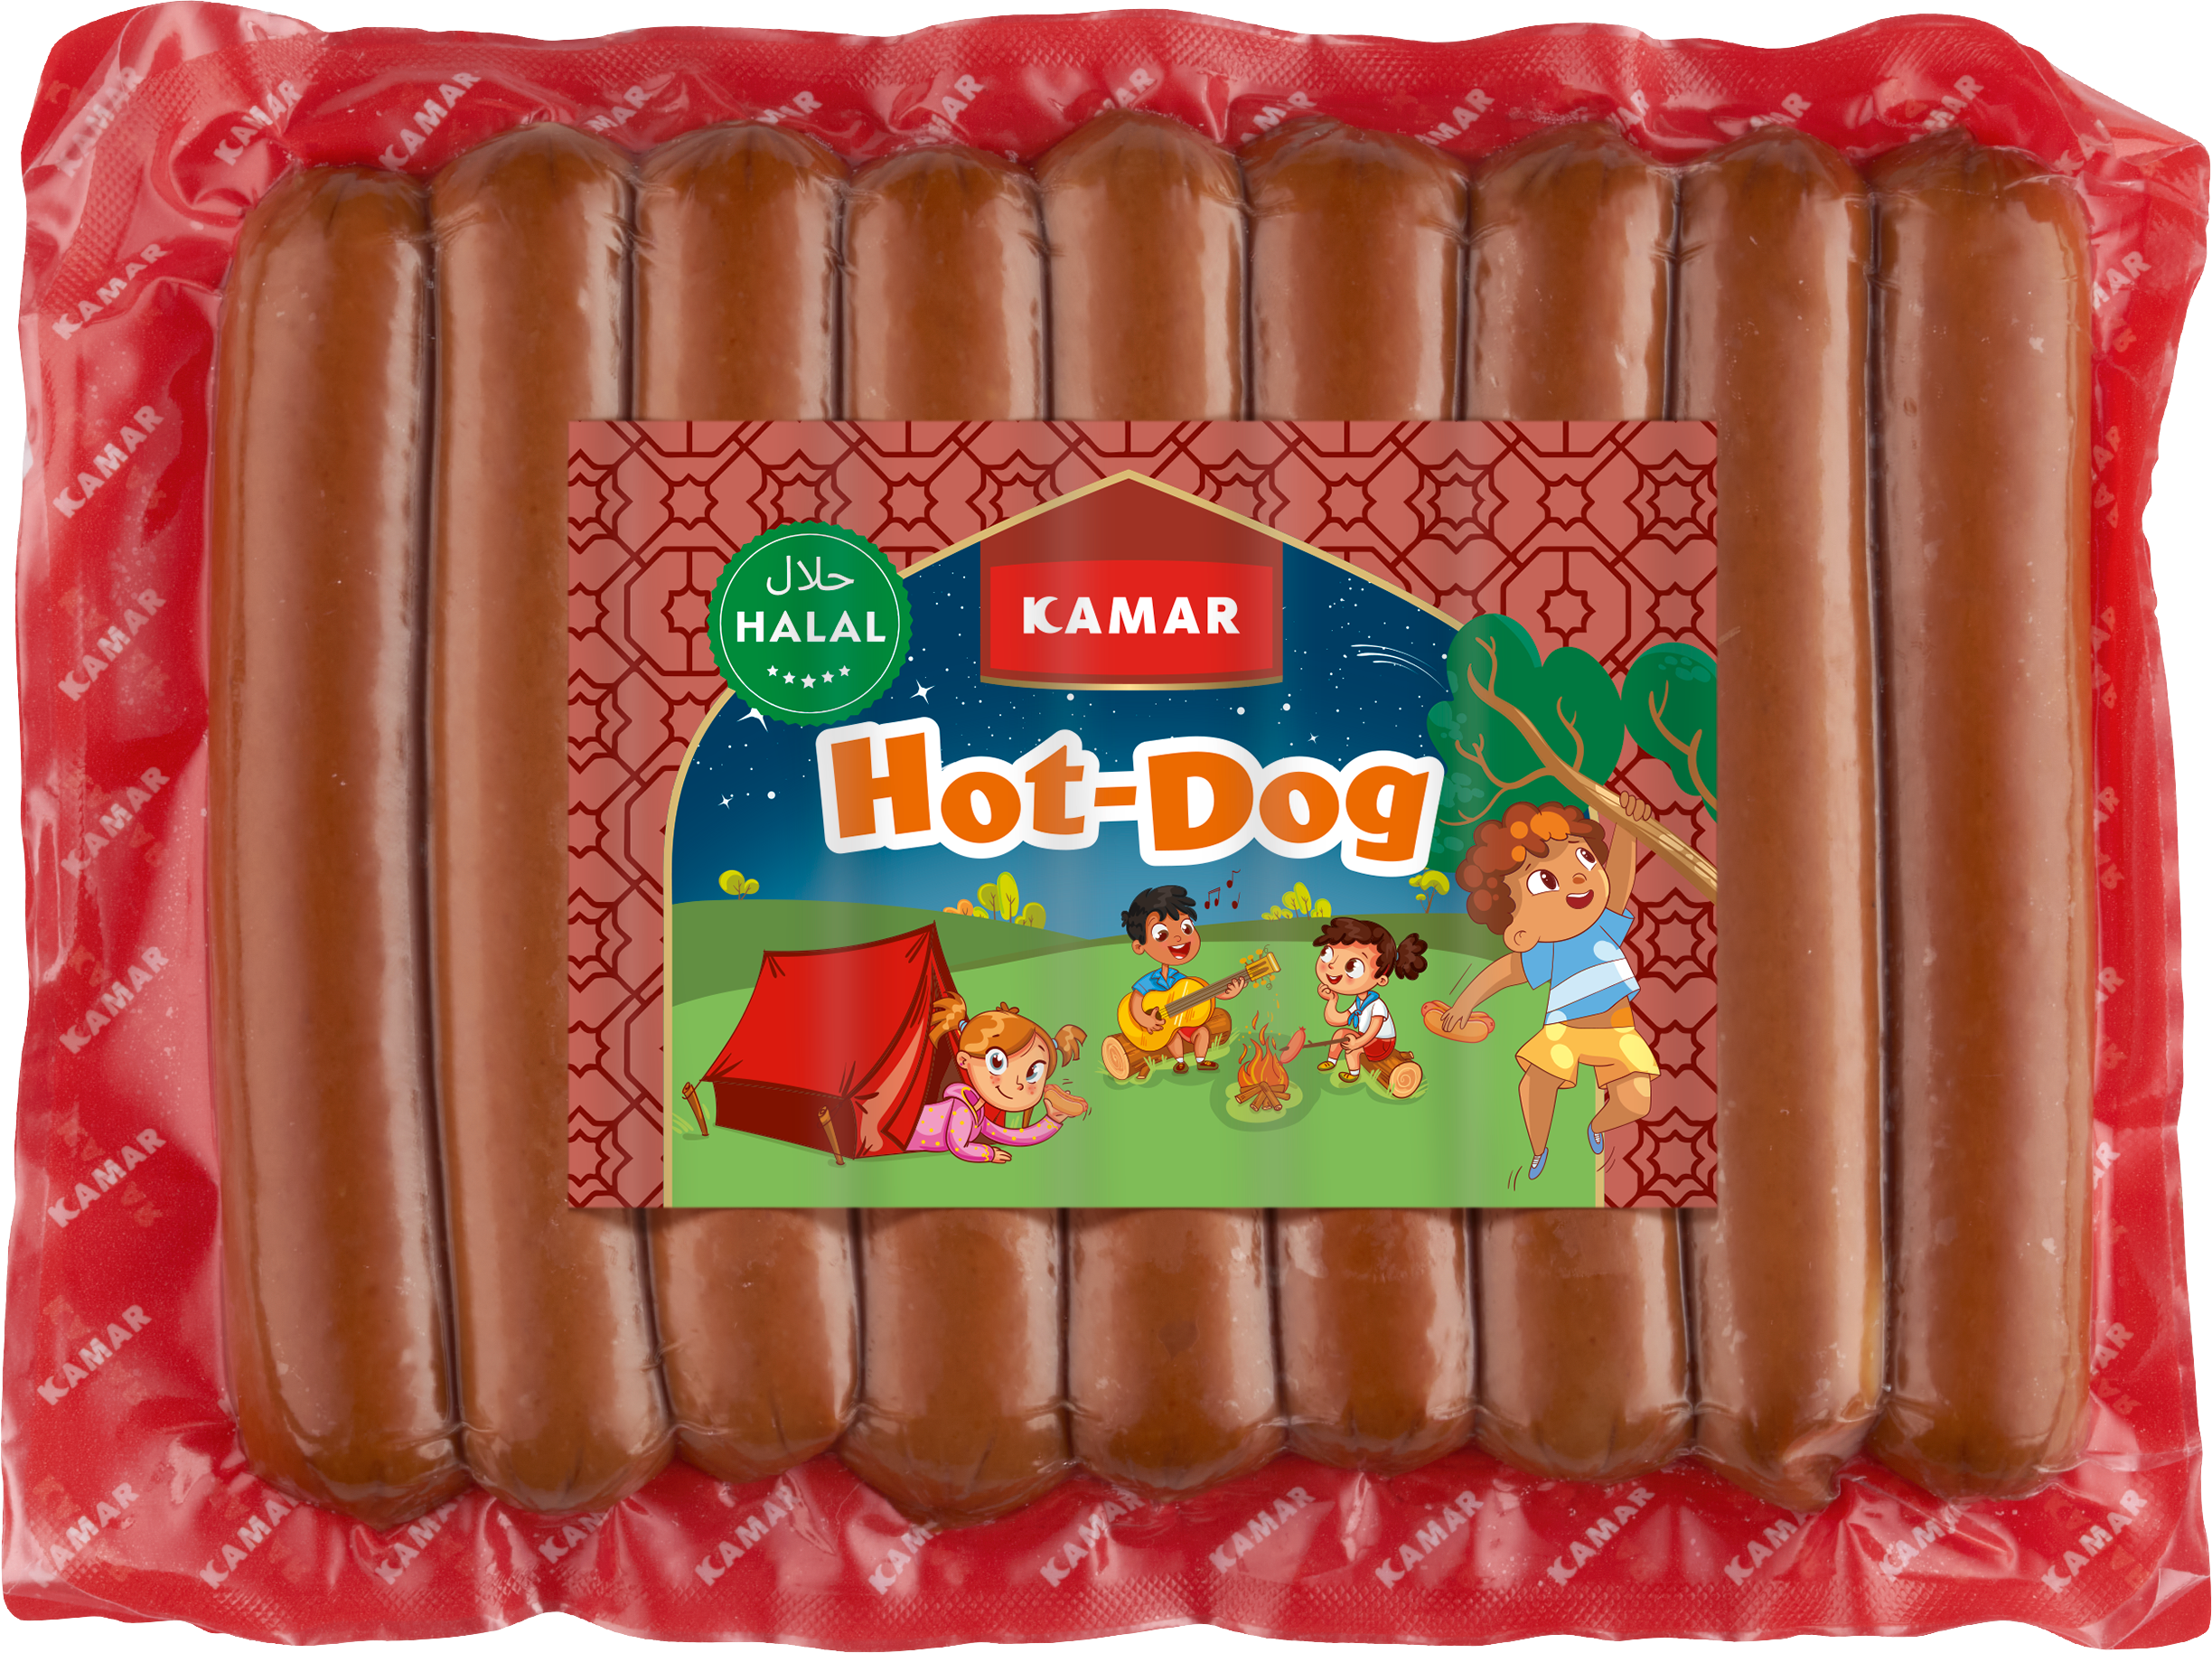 Meemken Kamar Kids Hot Dog Packshot 01 Kopie